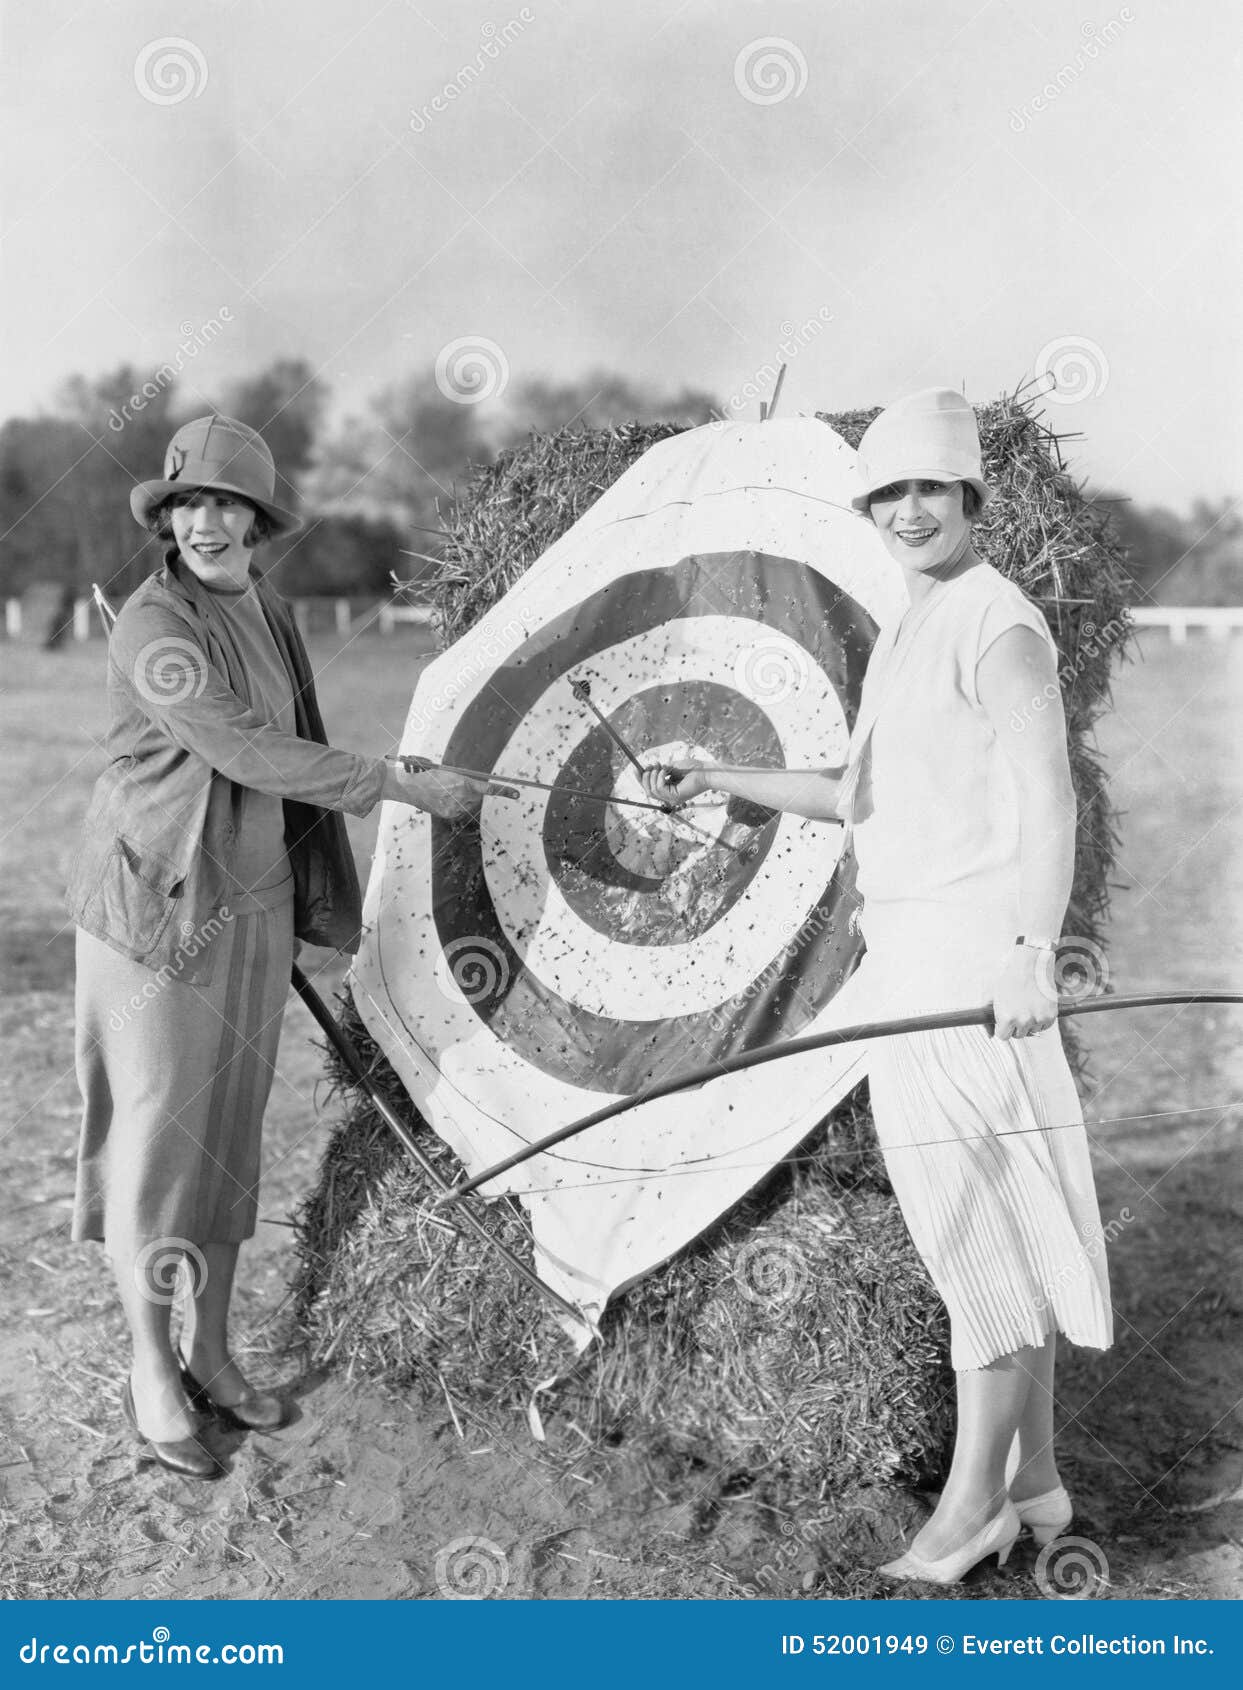 women with bulls eye in archery target